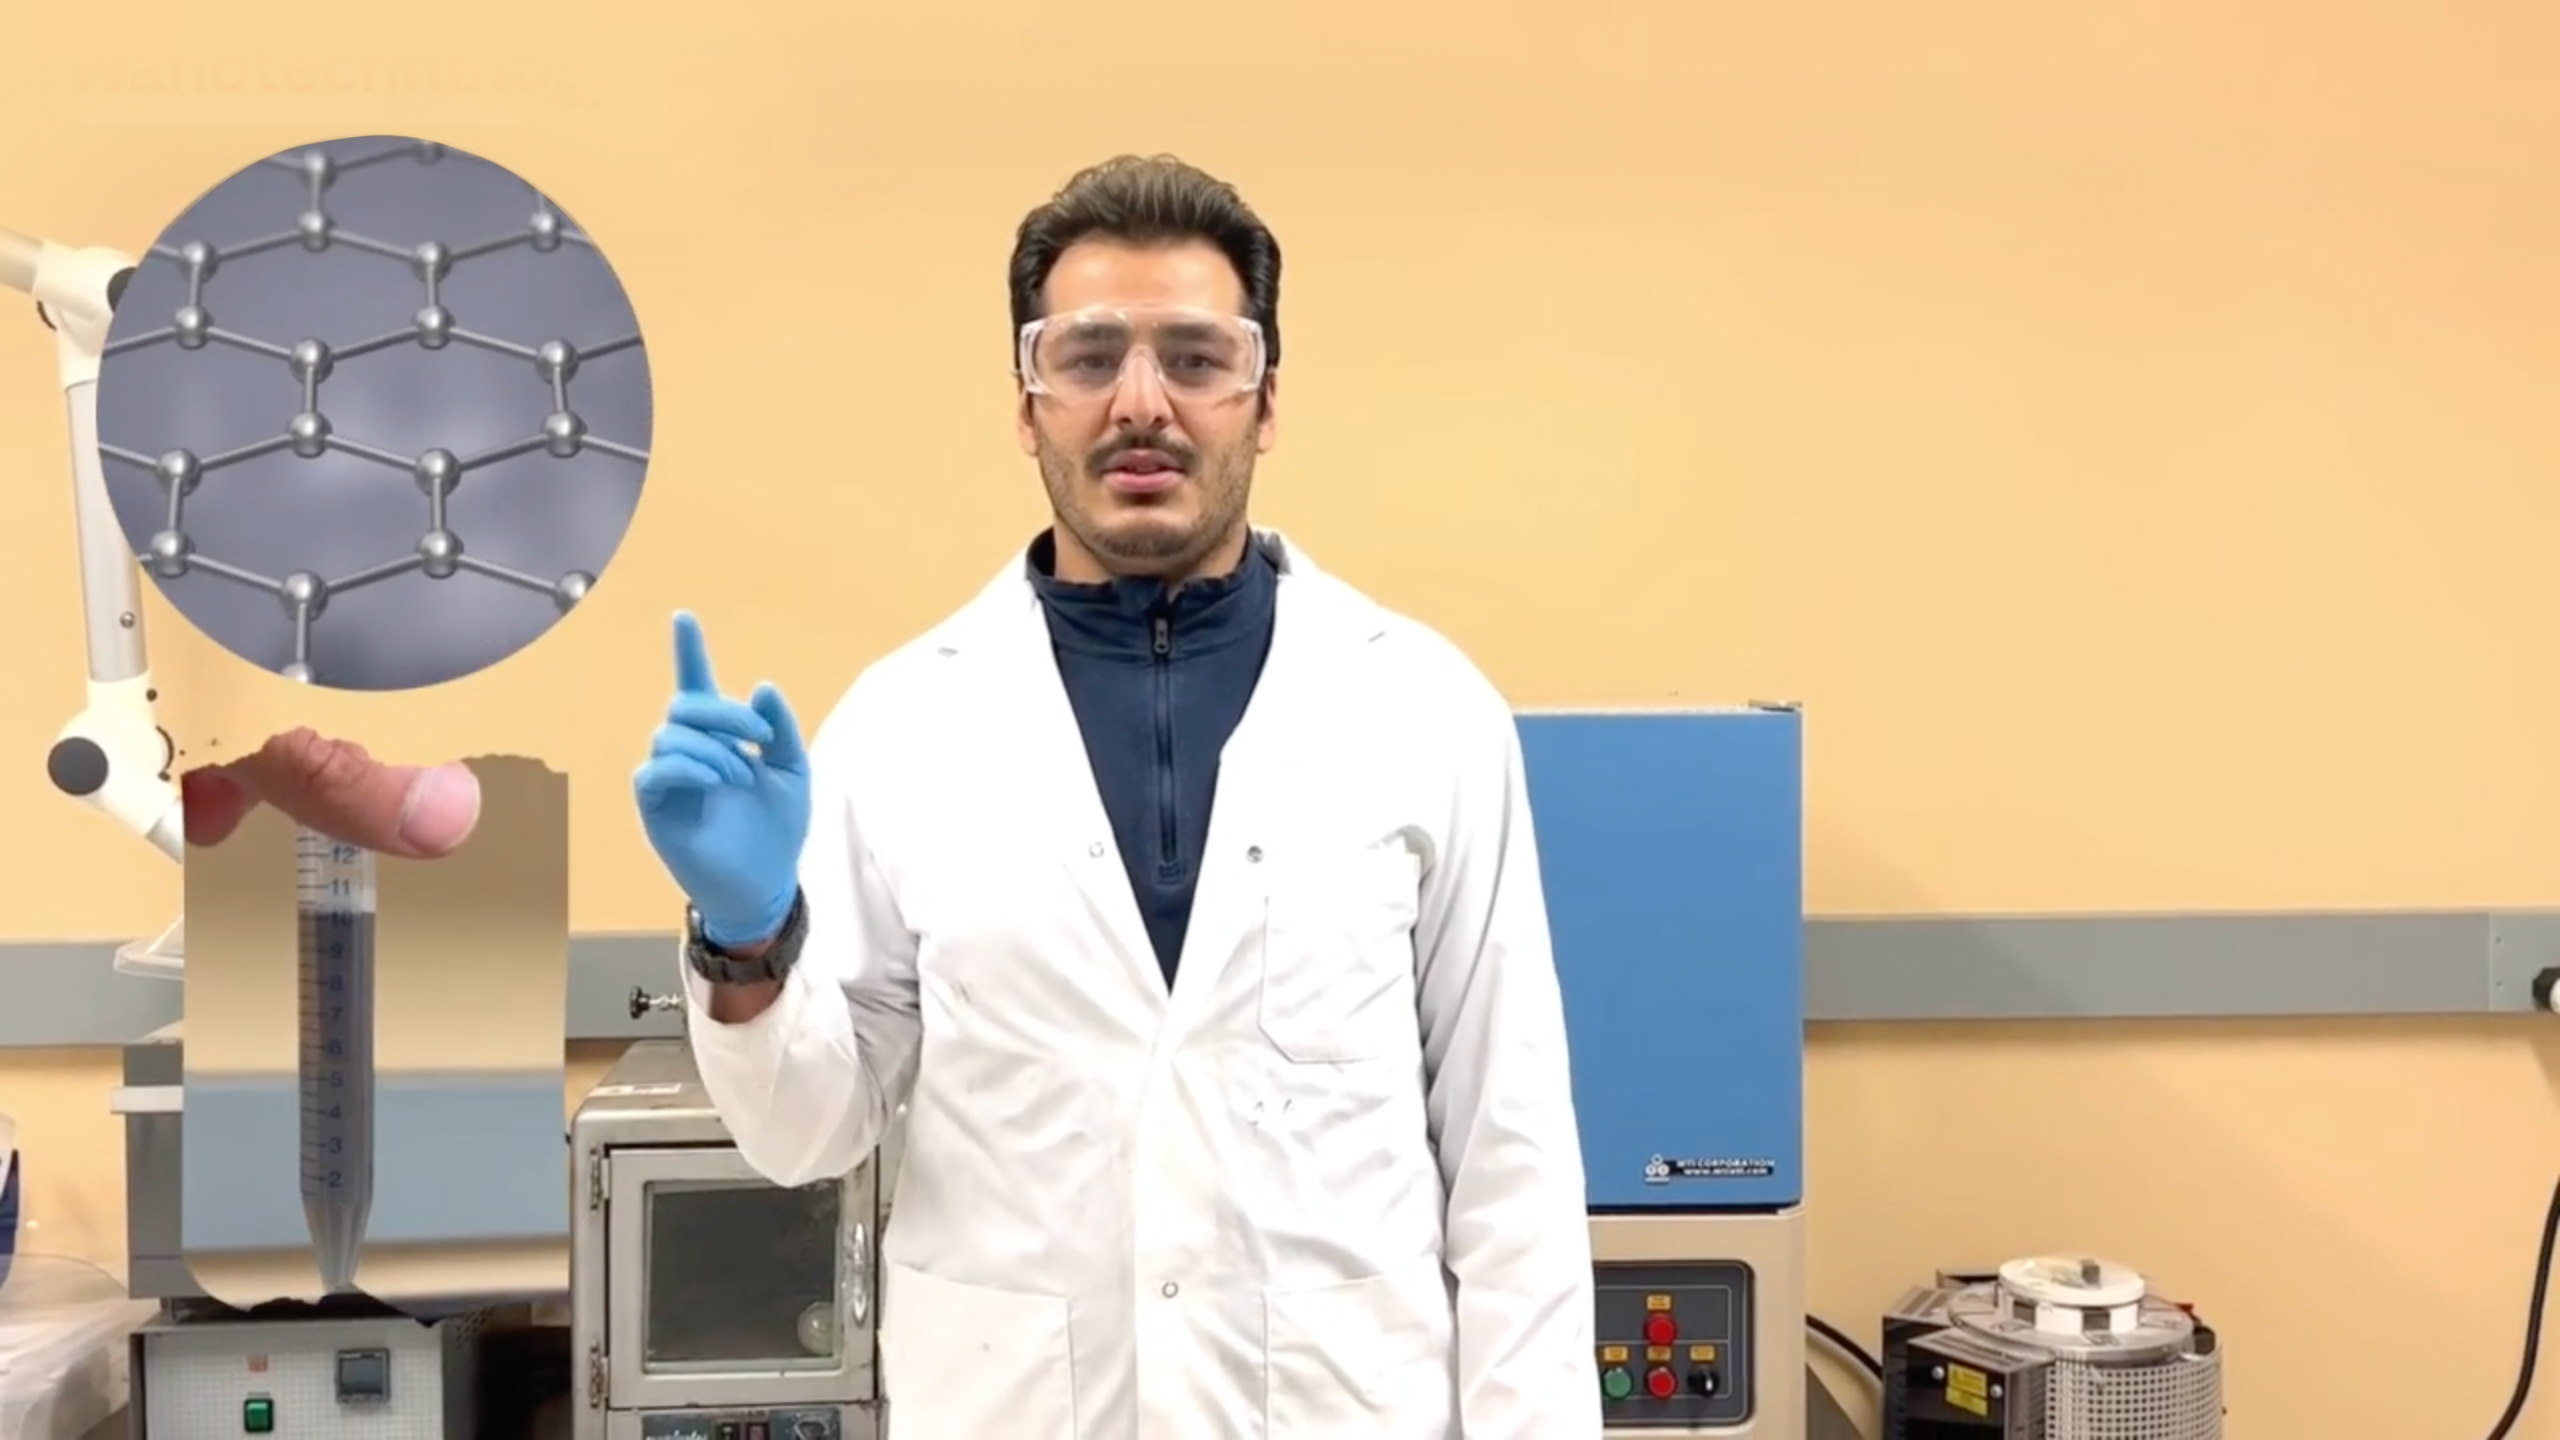 Scientifique portant des lunettes de protection étanches et un sarrau, dans un laboratoire, qui pointe une main gantée de bleu vers une bulle qui contient une image représentant la nanotechnologie.